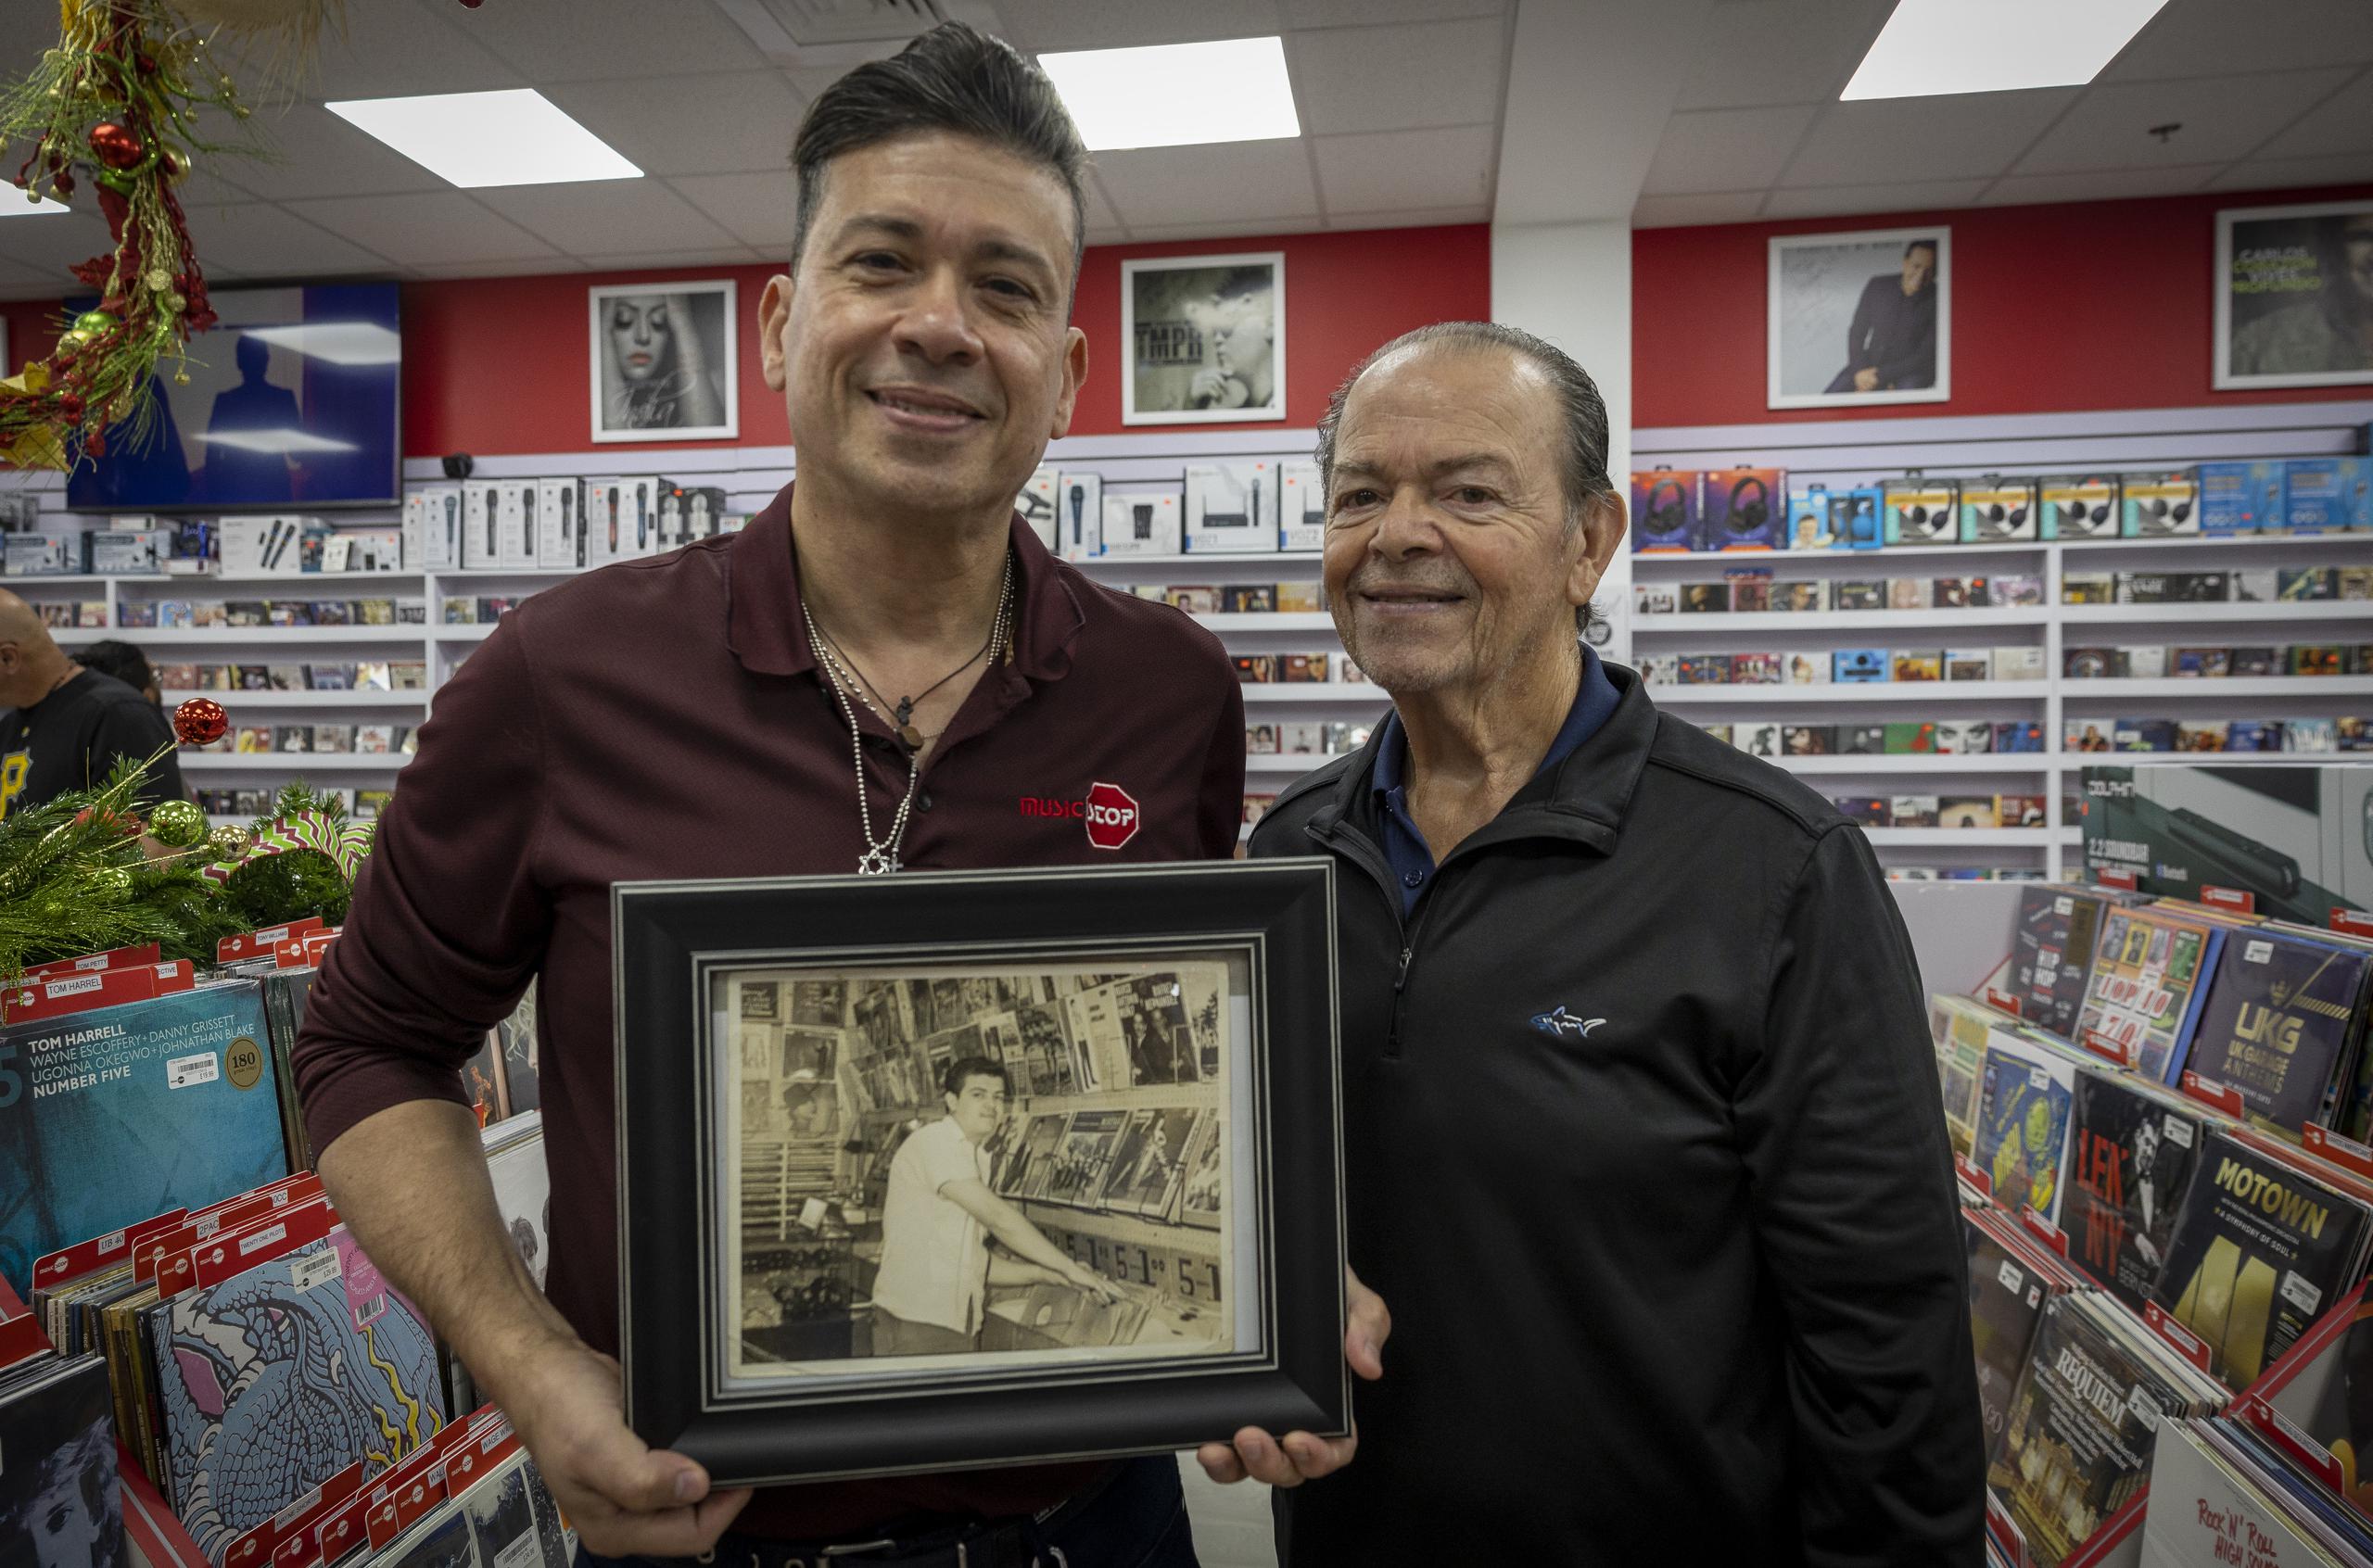 El dueño de Music Stop, Richard Soto, celebra 49 años del negocio que fundó su padre, Francisco Soto, desde la ciudad de Nueva York en los años 60.